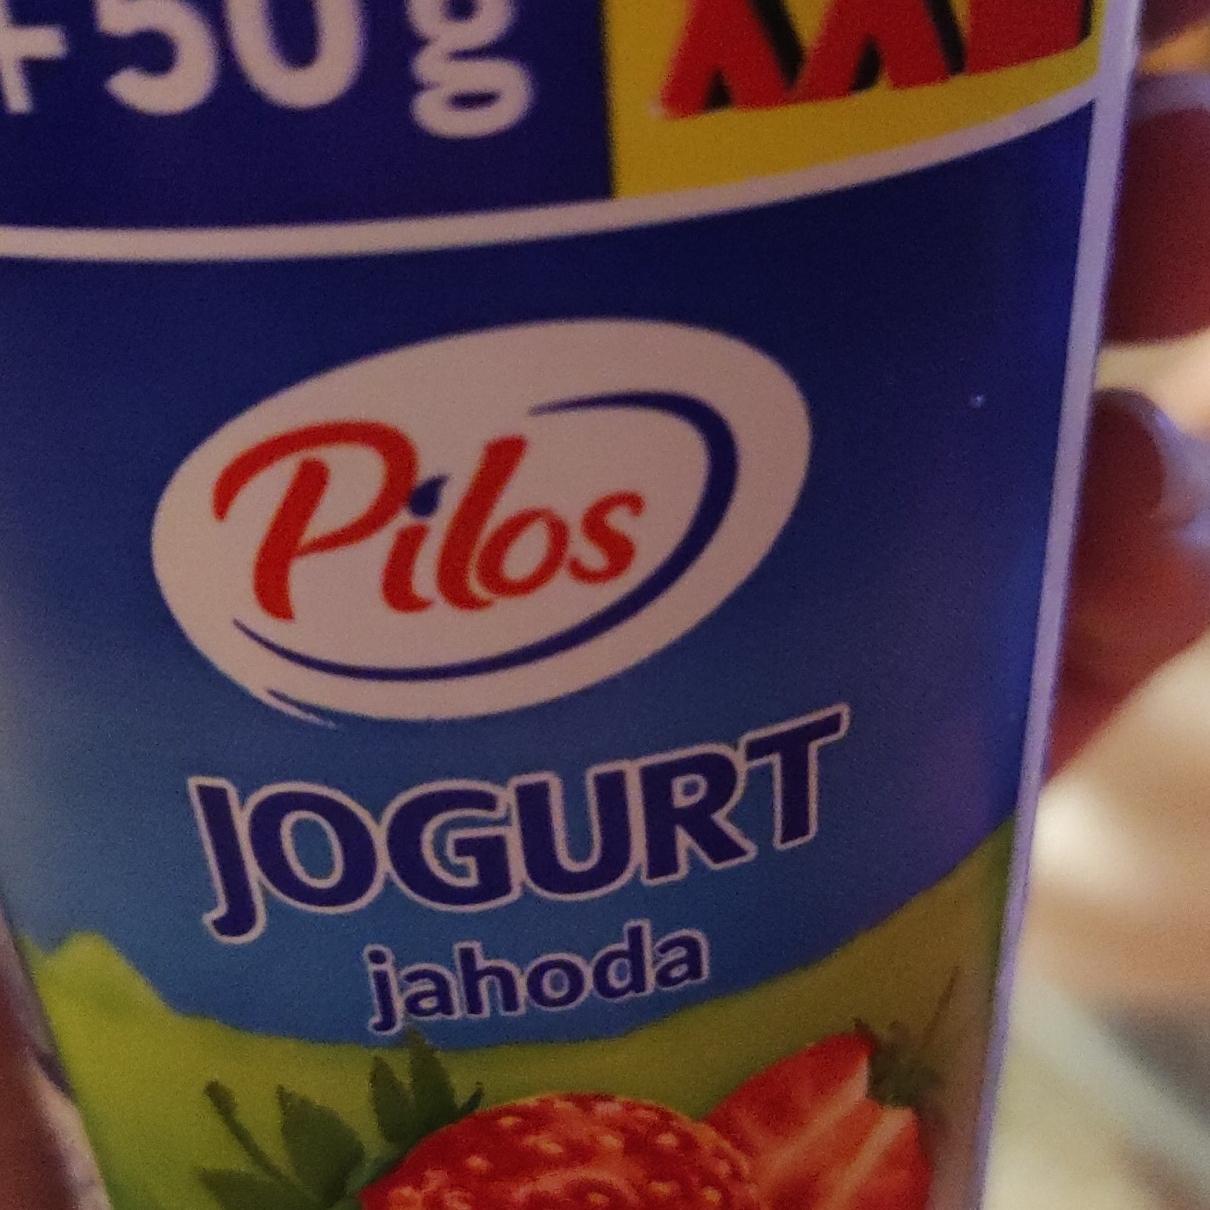 Fotografie - Pilos ovocny jogurt jahoda